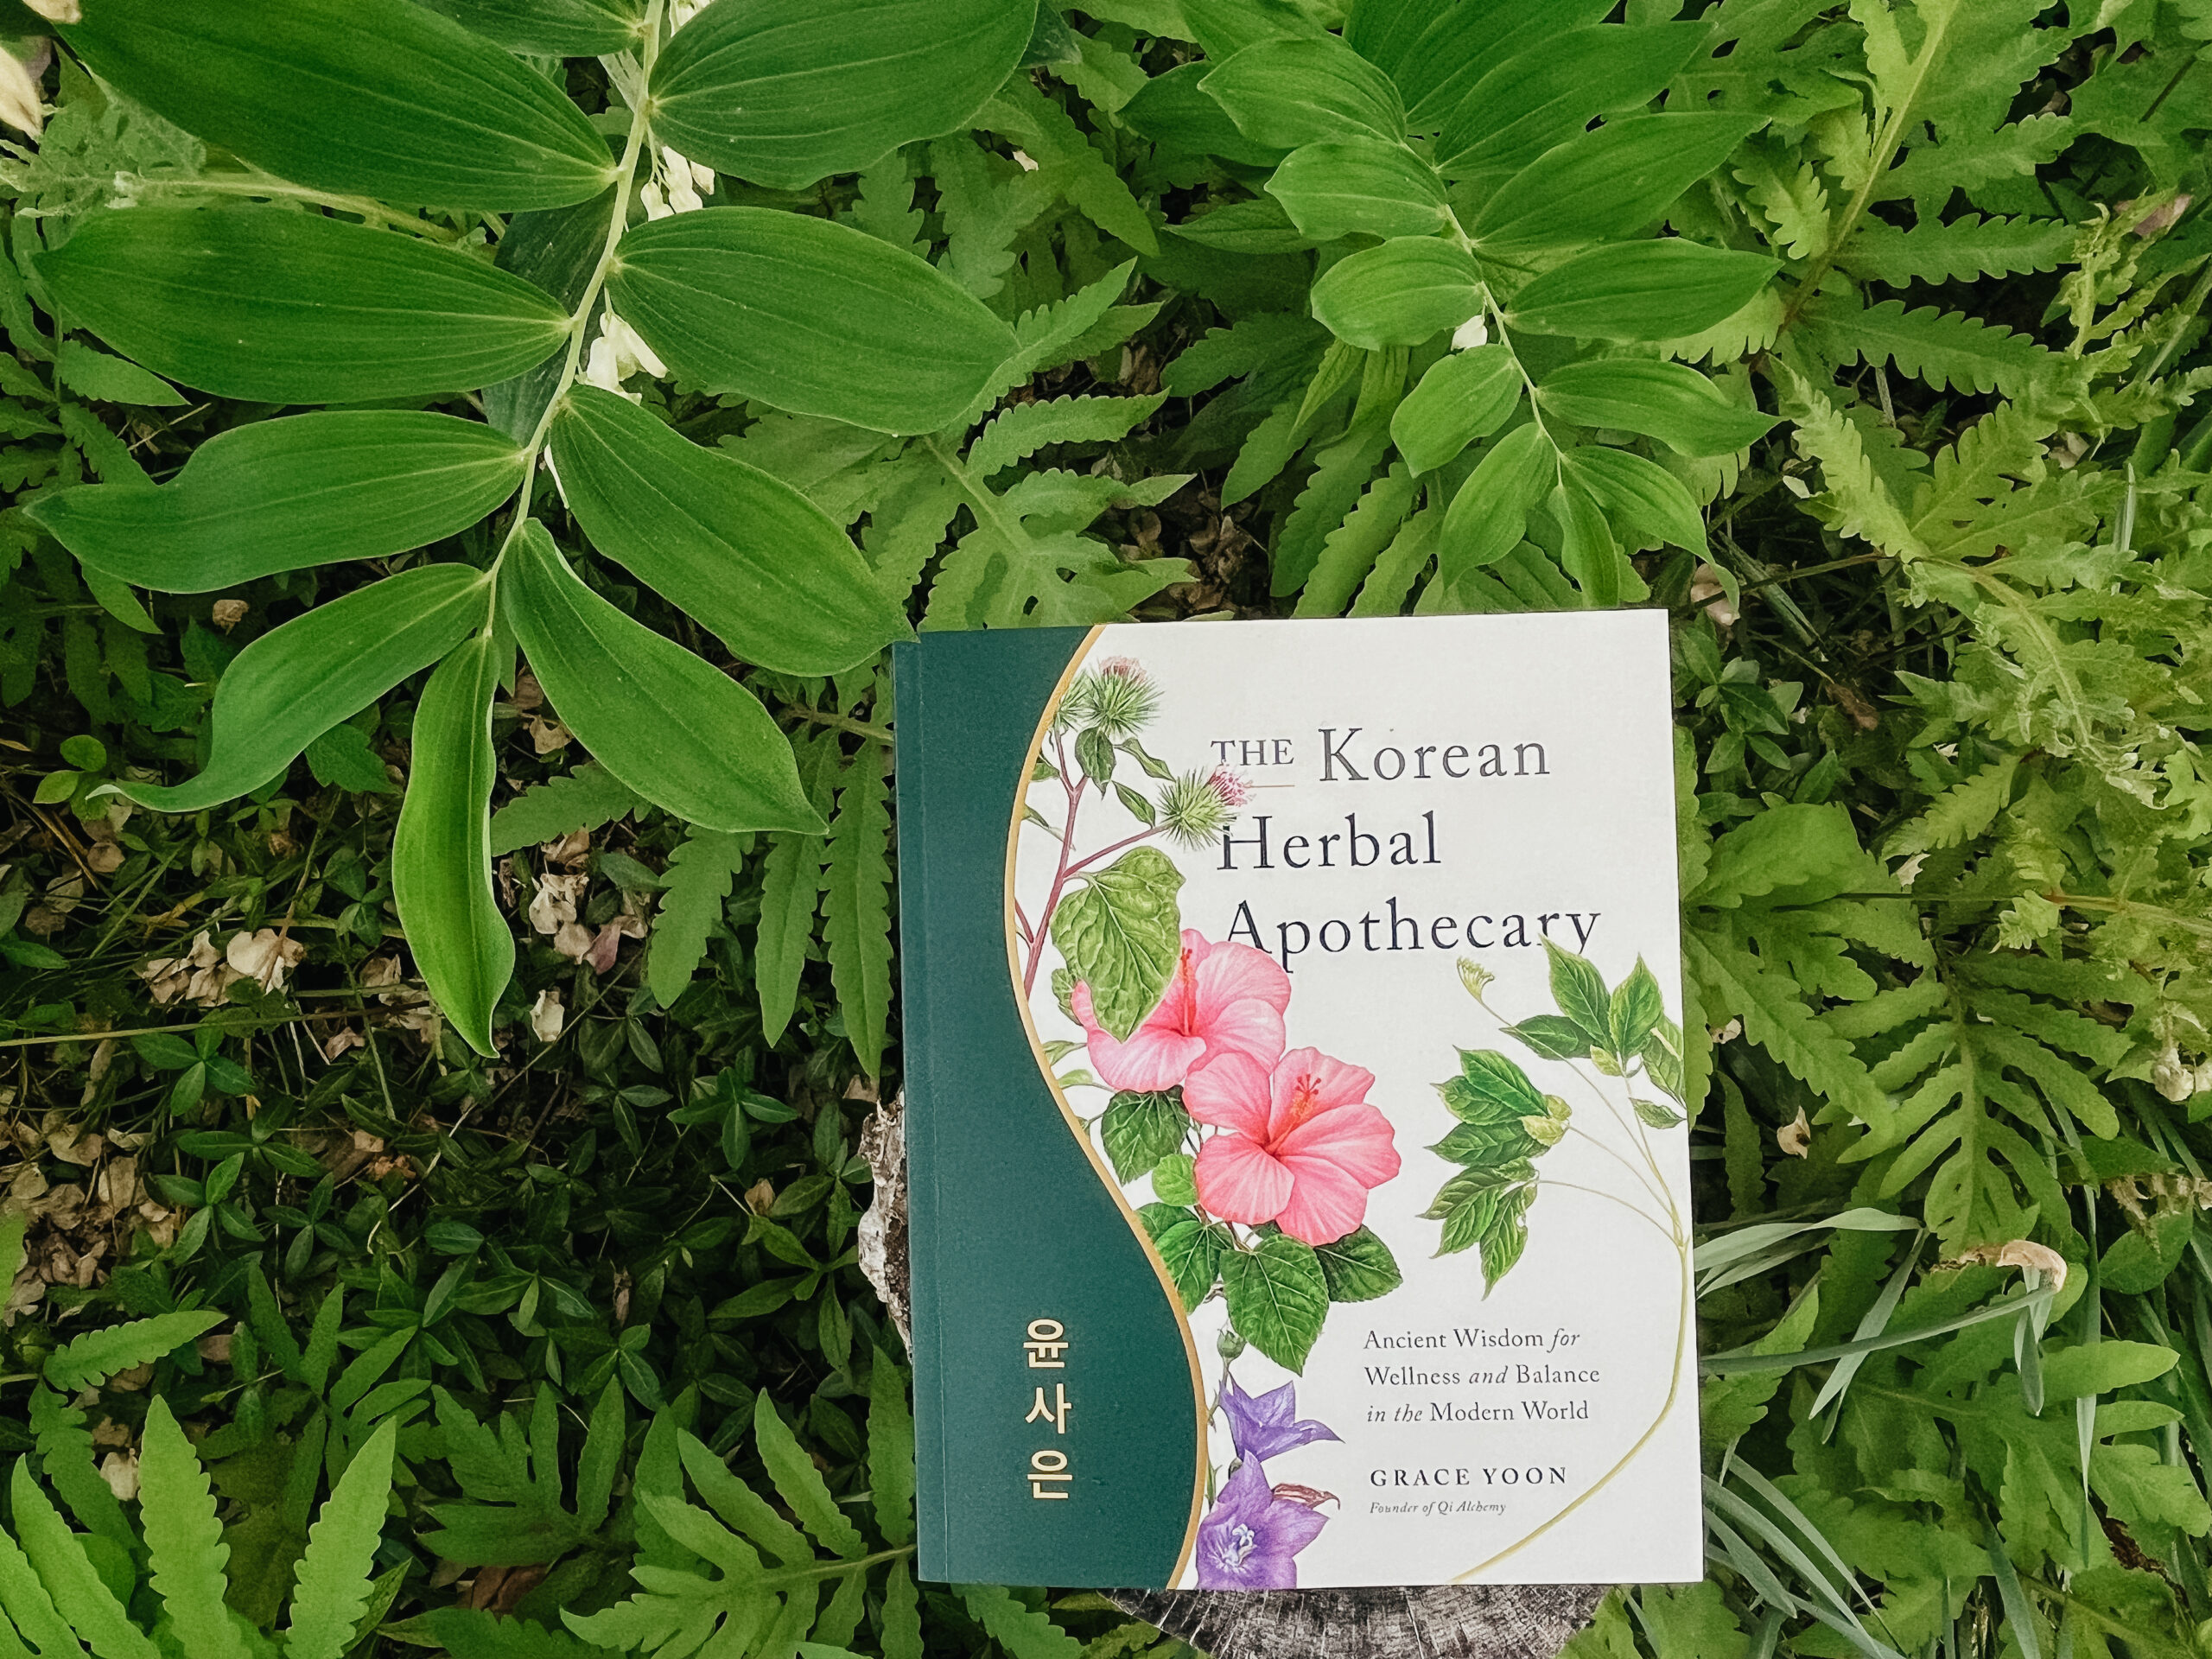 The Korean Herbal Apothecary book